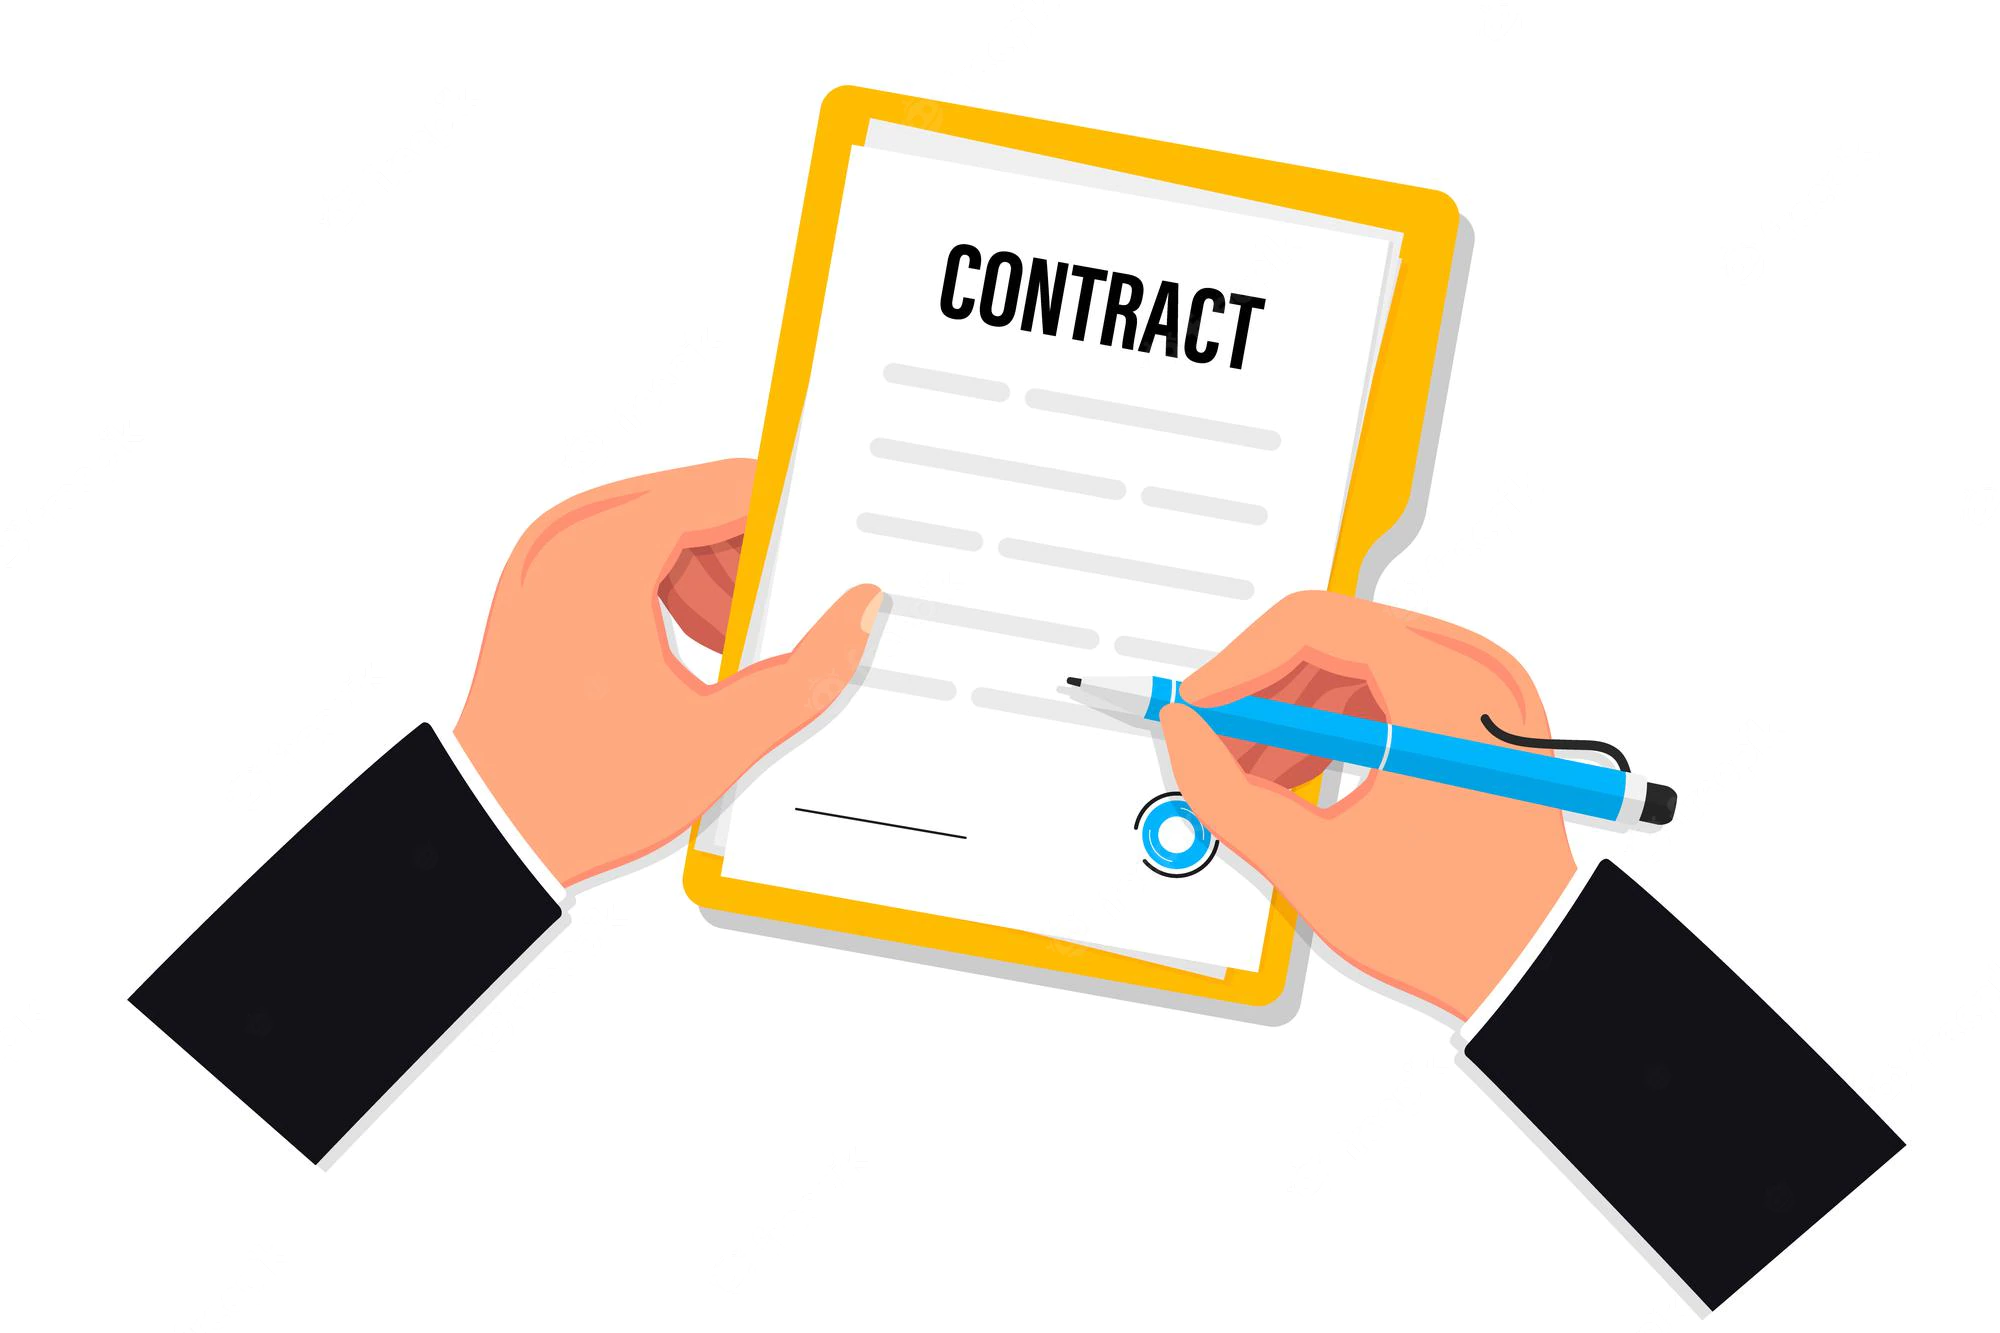 Phụ lục hợp đồng lao động được phép ký tối đa bao nhiêu lần và có được sửa đổi thời hạn của hợp đồng bằng phụ lục hay không?￼